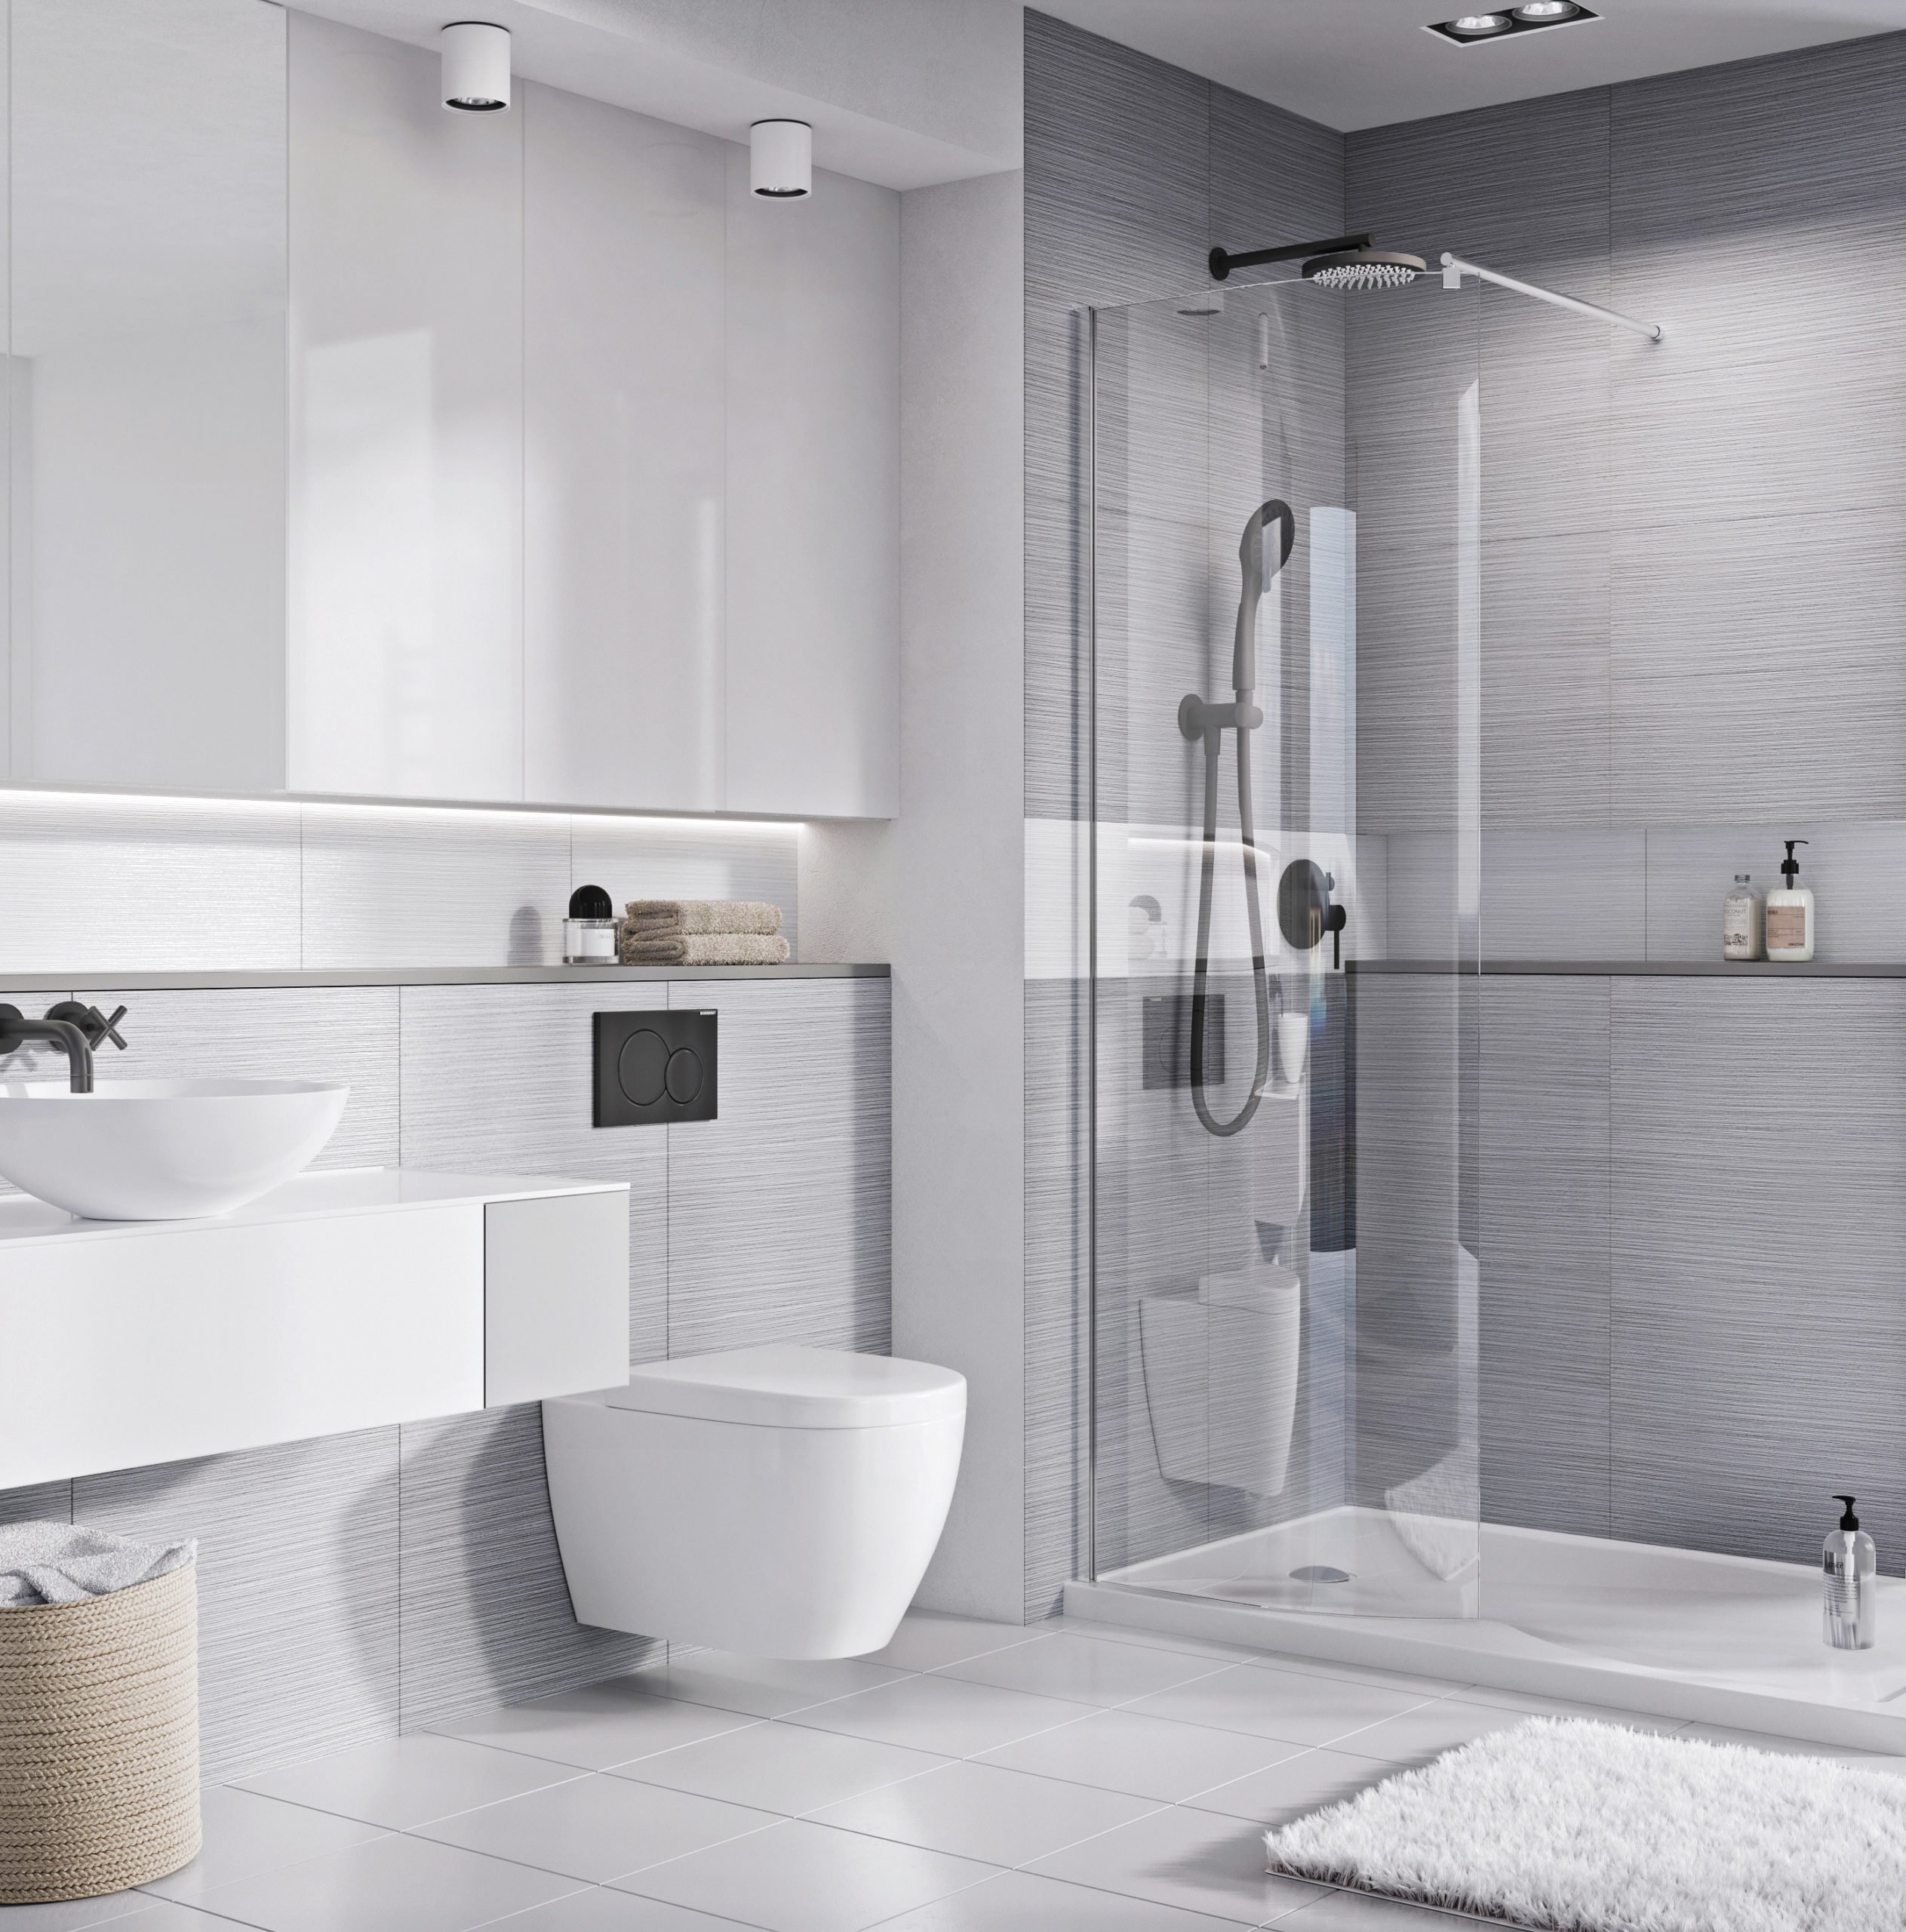 A great idea for a fresh modern grey bathroom